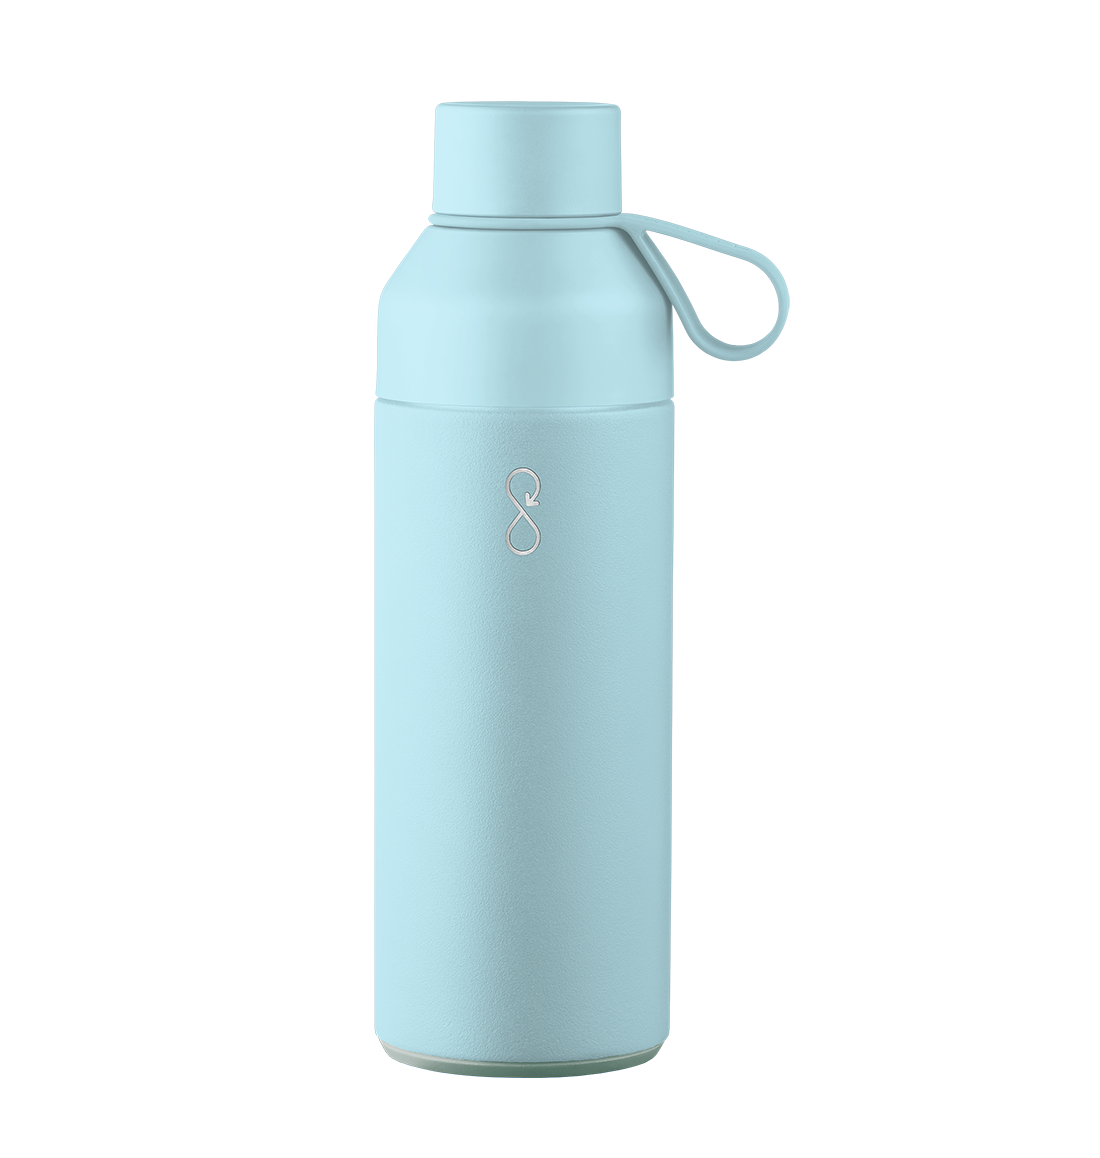 Ocean Bottle gjenbrukbare vannflaske er den perfekte følgesvennen for enhver livsstil, med 10 års garanti og et løfte om å redusere plastavfall i naturen